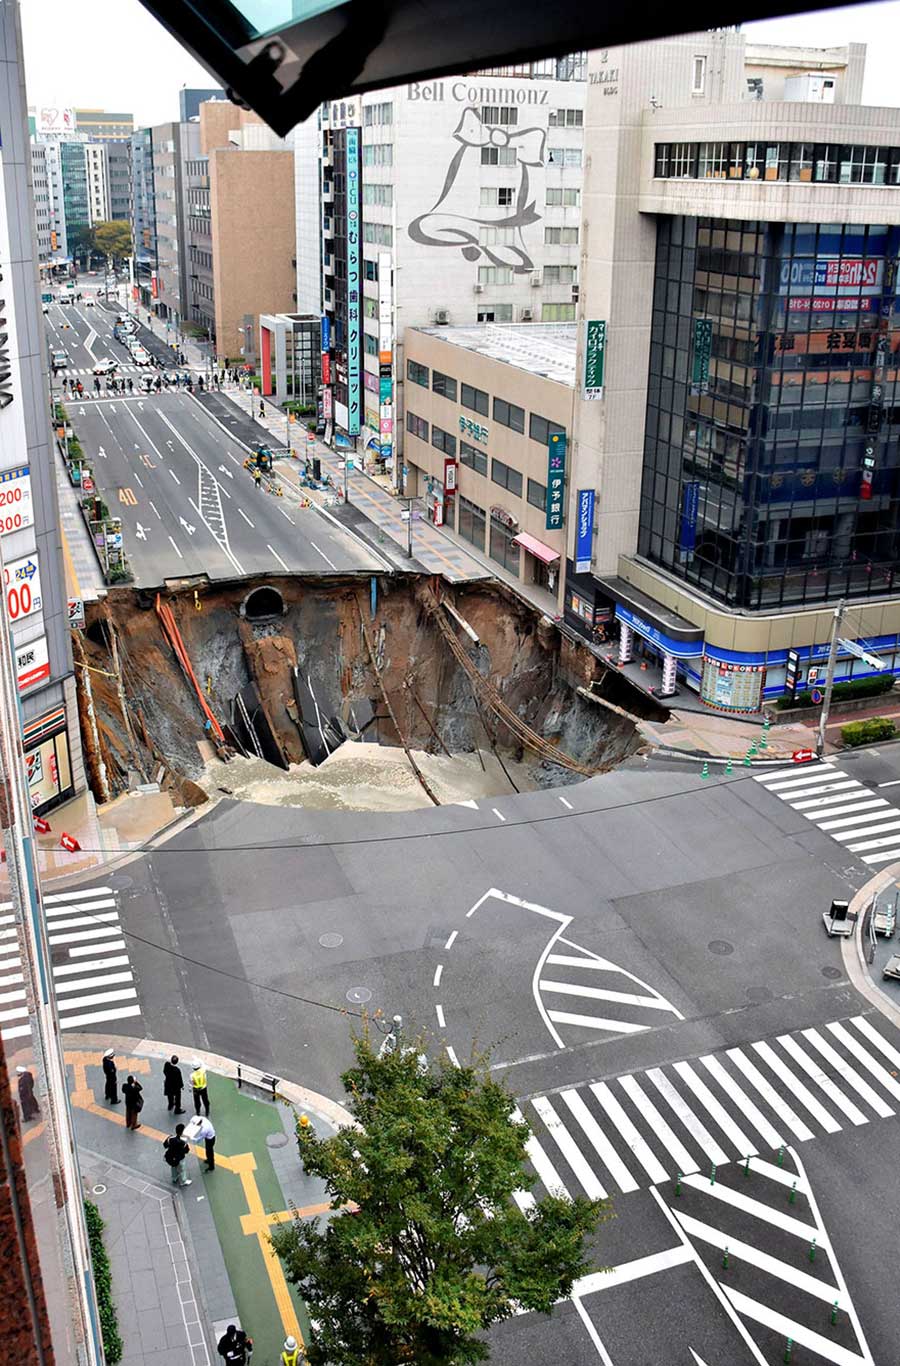 ژاپنی ها در اقدامی عجیب حفره 15 متری را در کمتر از یک هفته پر کردند